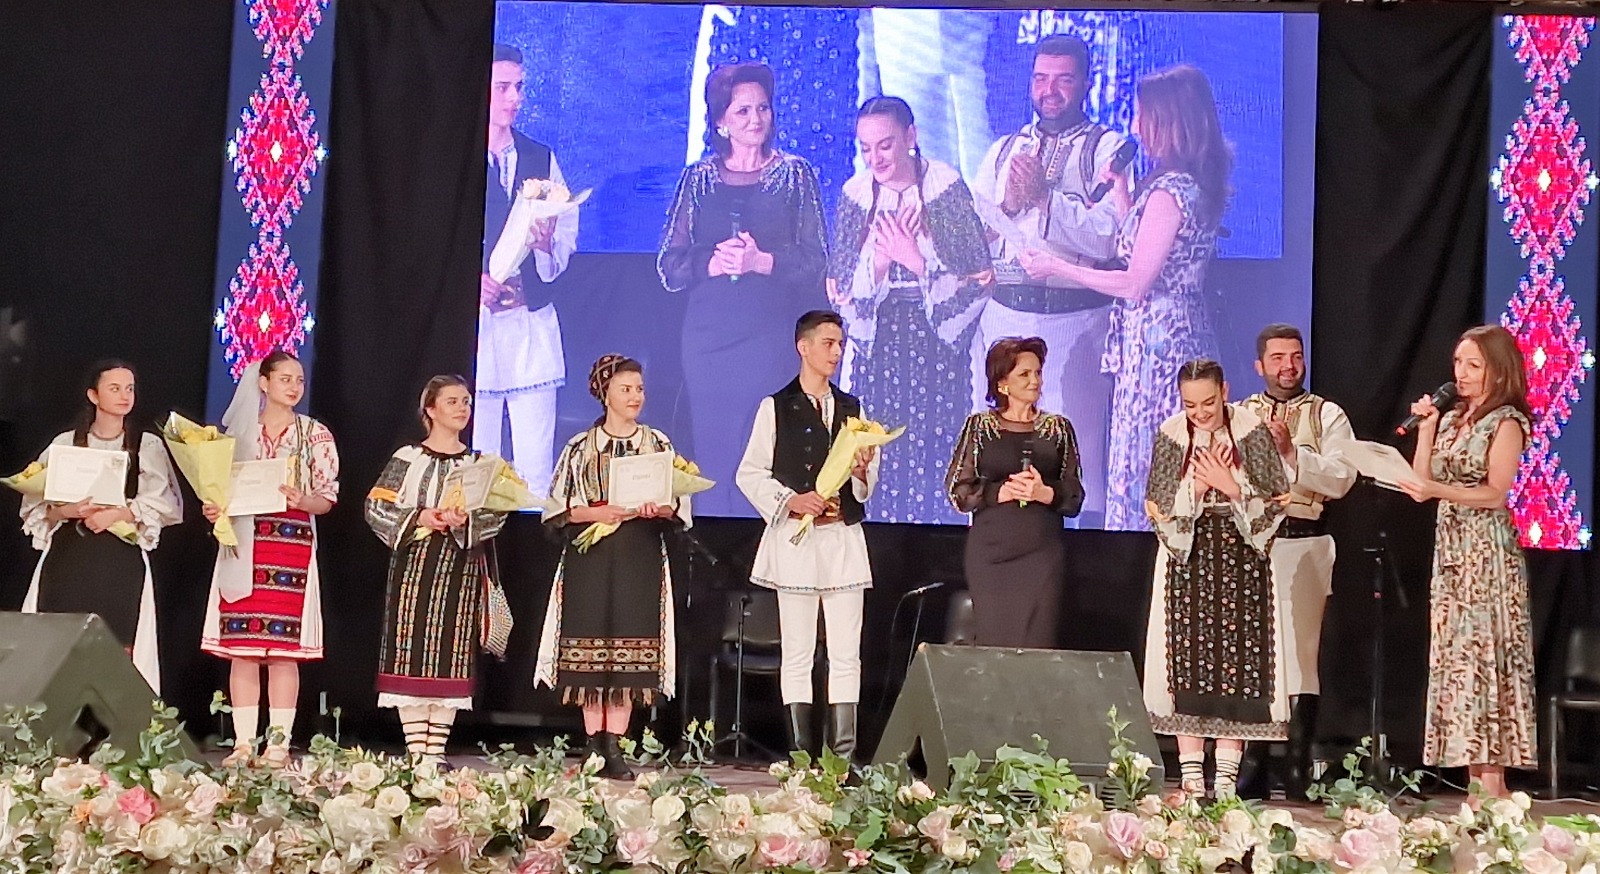 video bianca crețu, preferata publicului sibian la concursul național de interpretare vocală ”ilie micu”